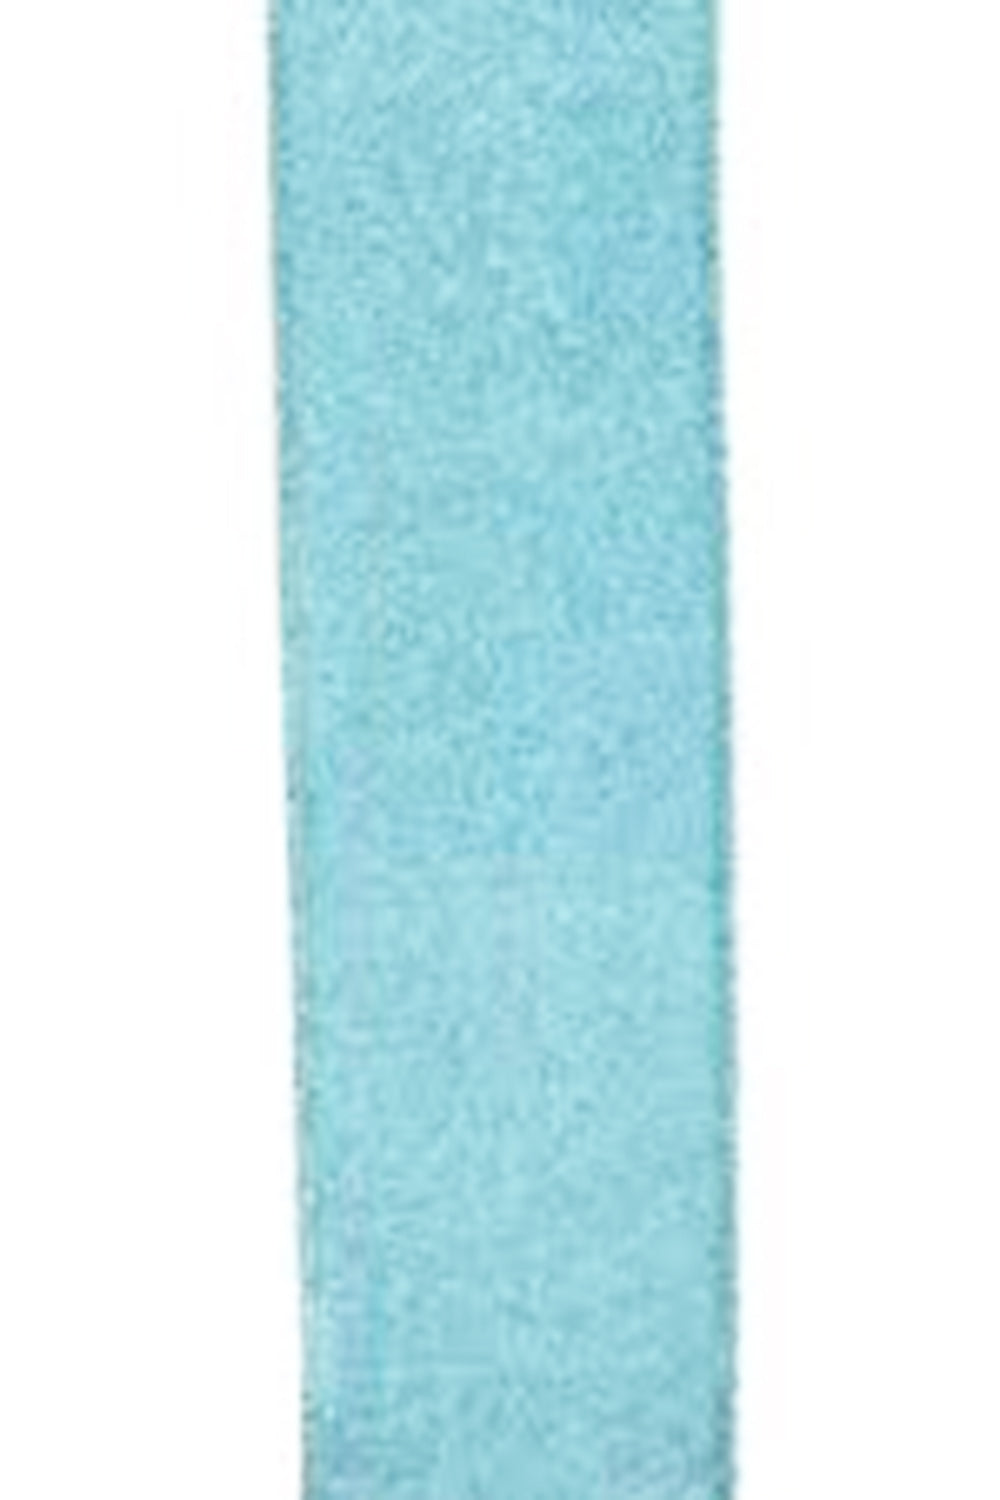 SIDEWALK SALE ITEM - Decorating Ribbon - Blue Glitter